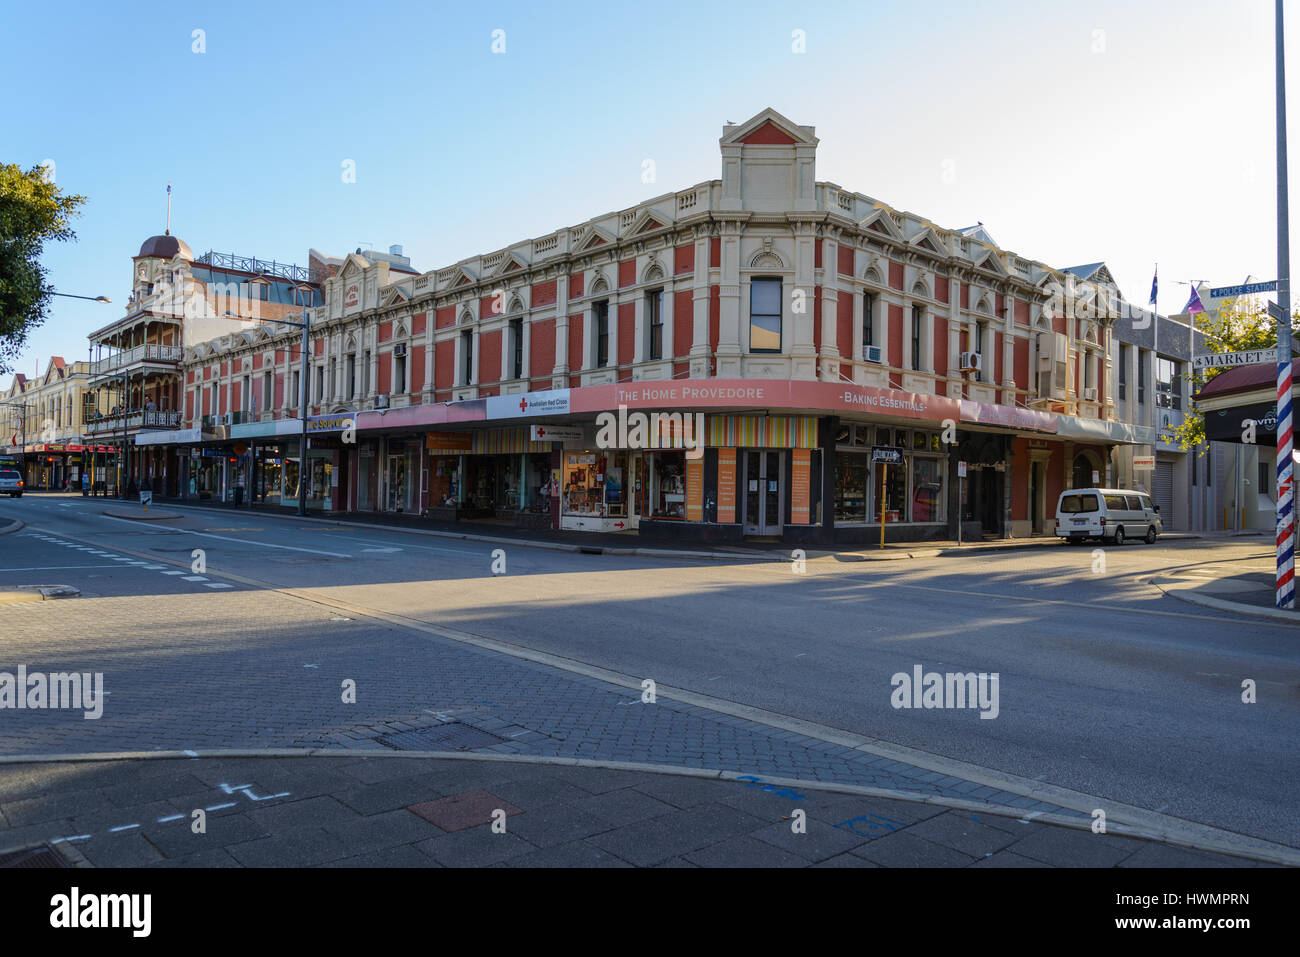 Fremantle, Australien - 10. Dezember 2015 Fremantle. Kaiserlichen Kammern. Gebäude aus dem Jahr 1896. Markt Straßenecke Leake Street, Fremantle, Perth Stockfoto